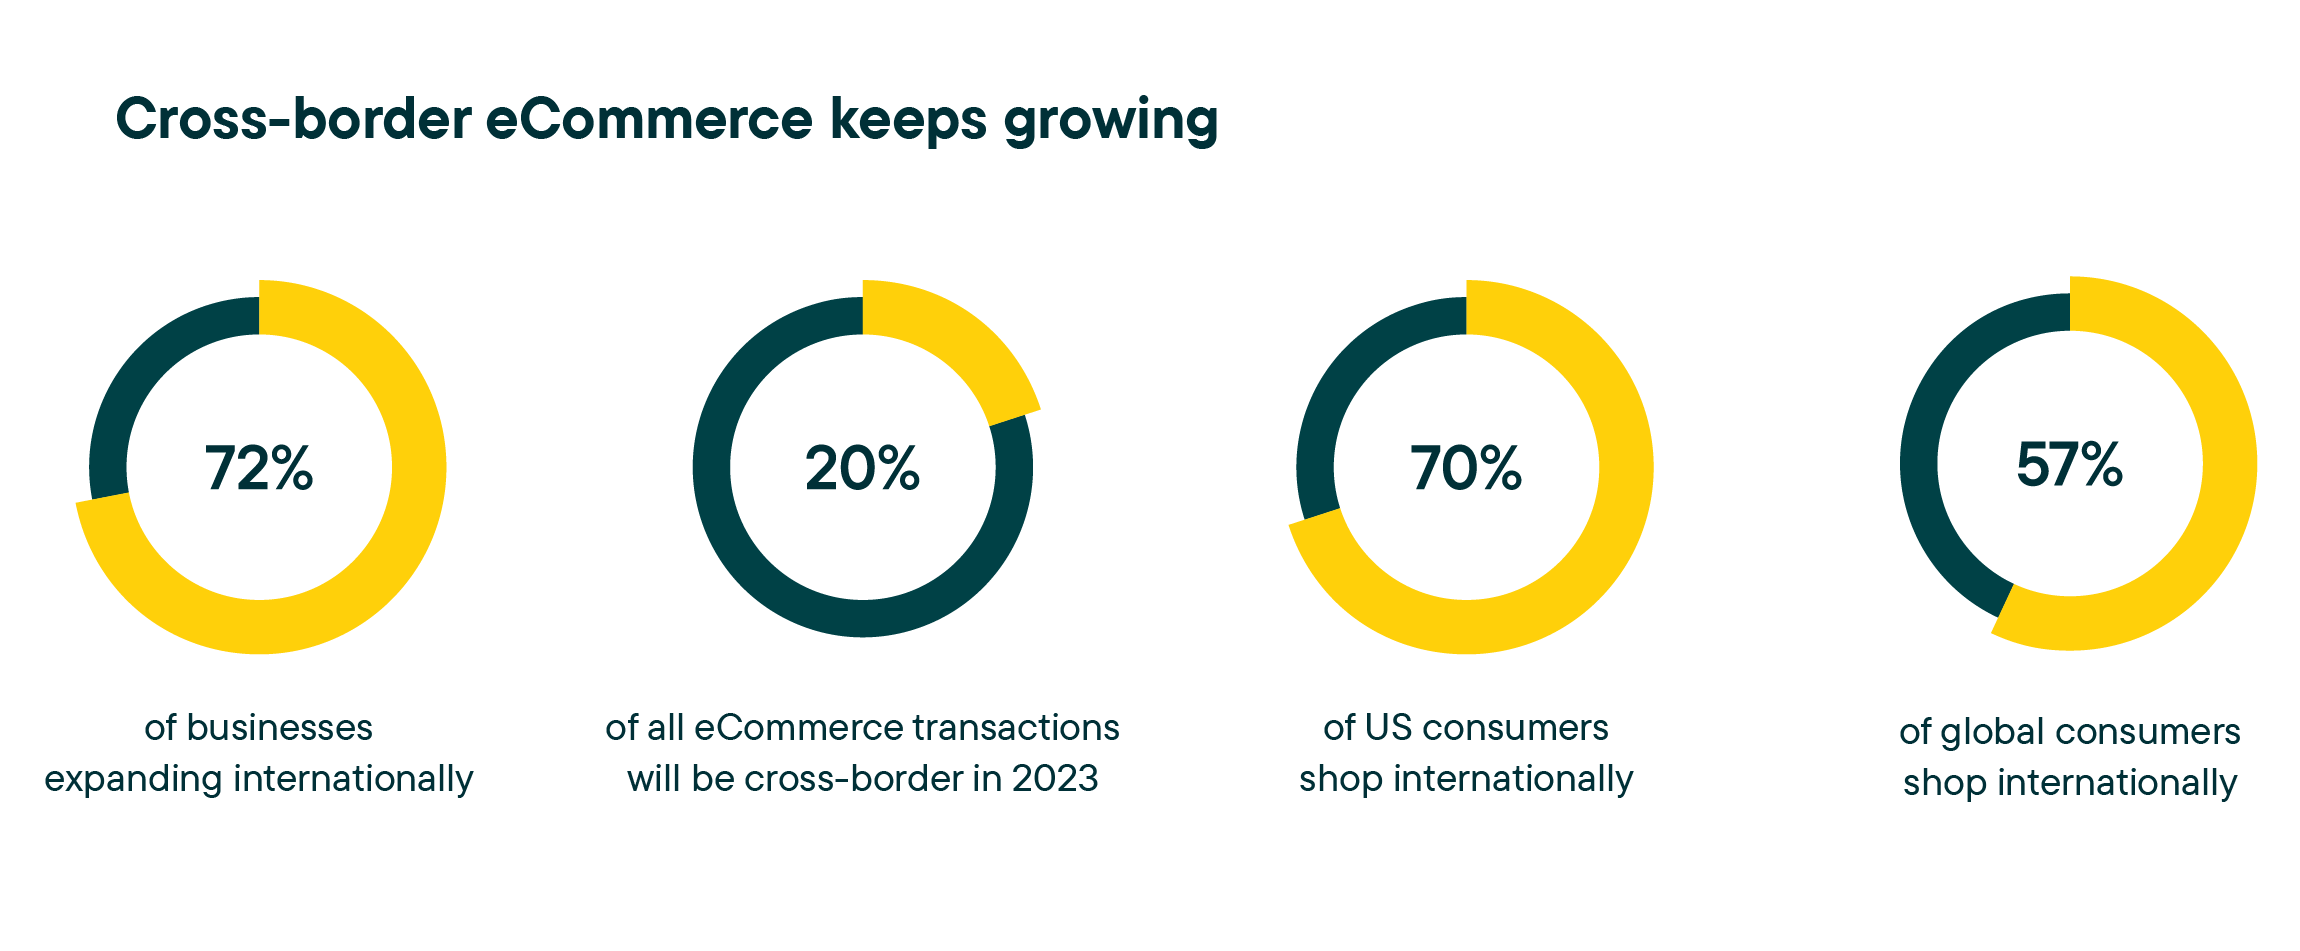 Cross-border eCommerce keeps growing